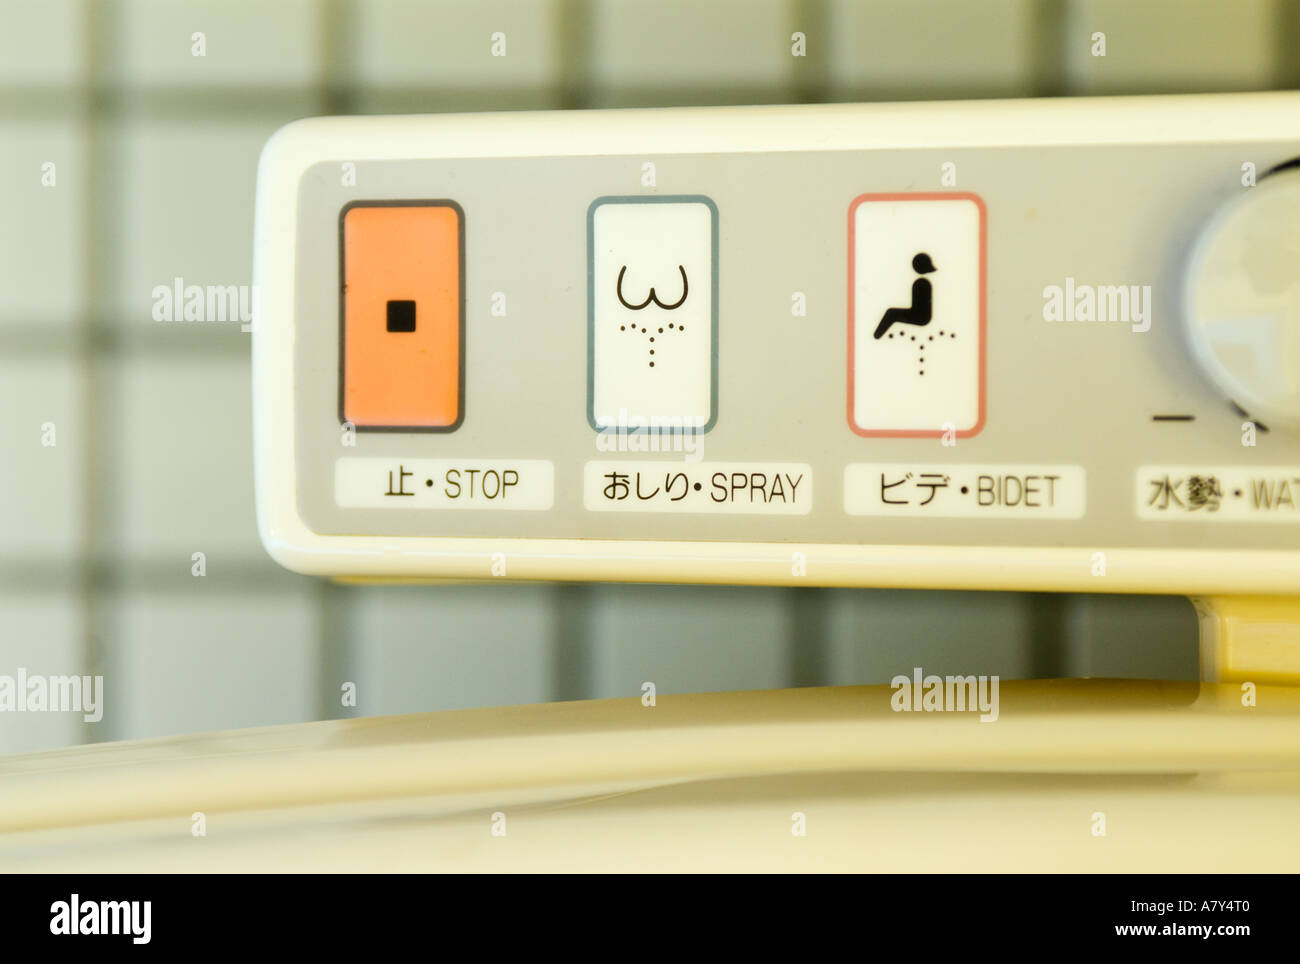 Détail de panneau de commande de lavage sur les toilettes exploités au Japon Banque D'Images